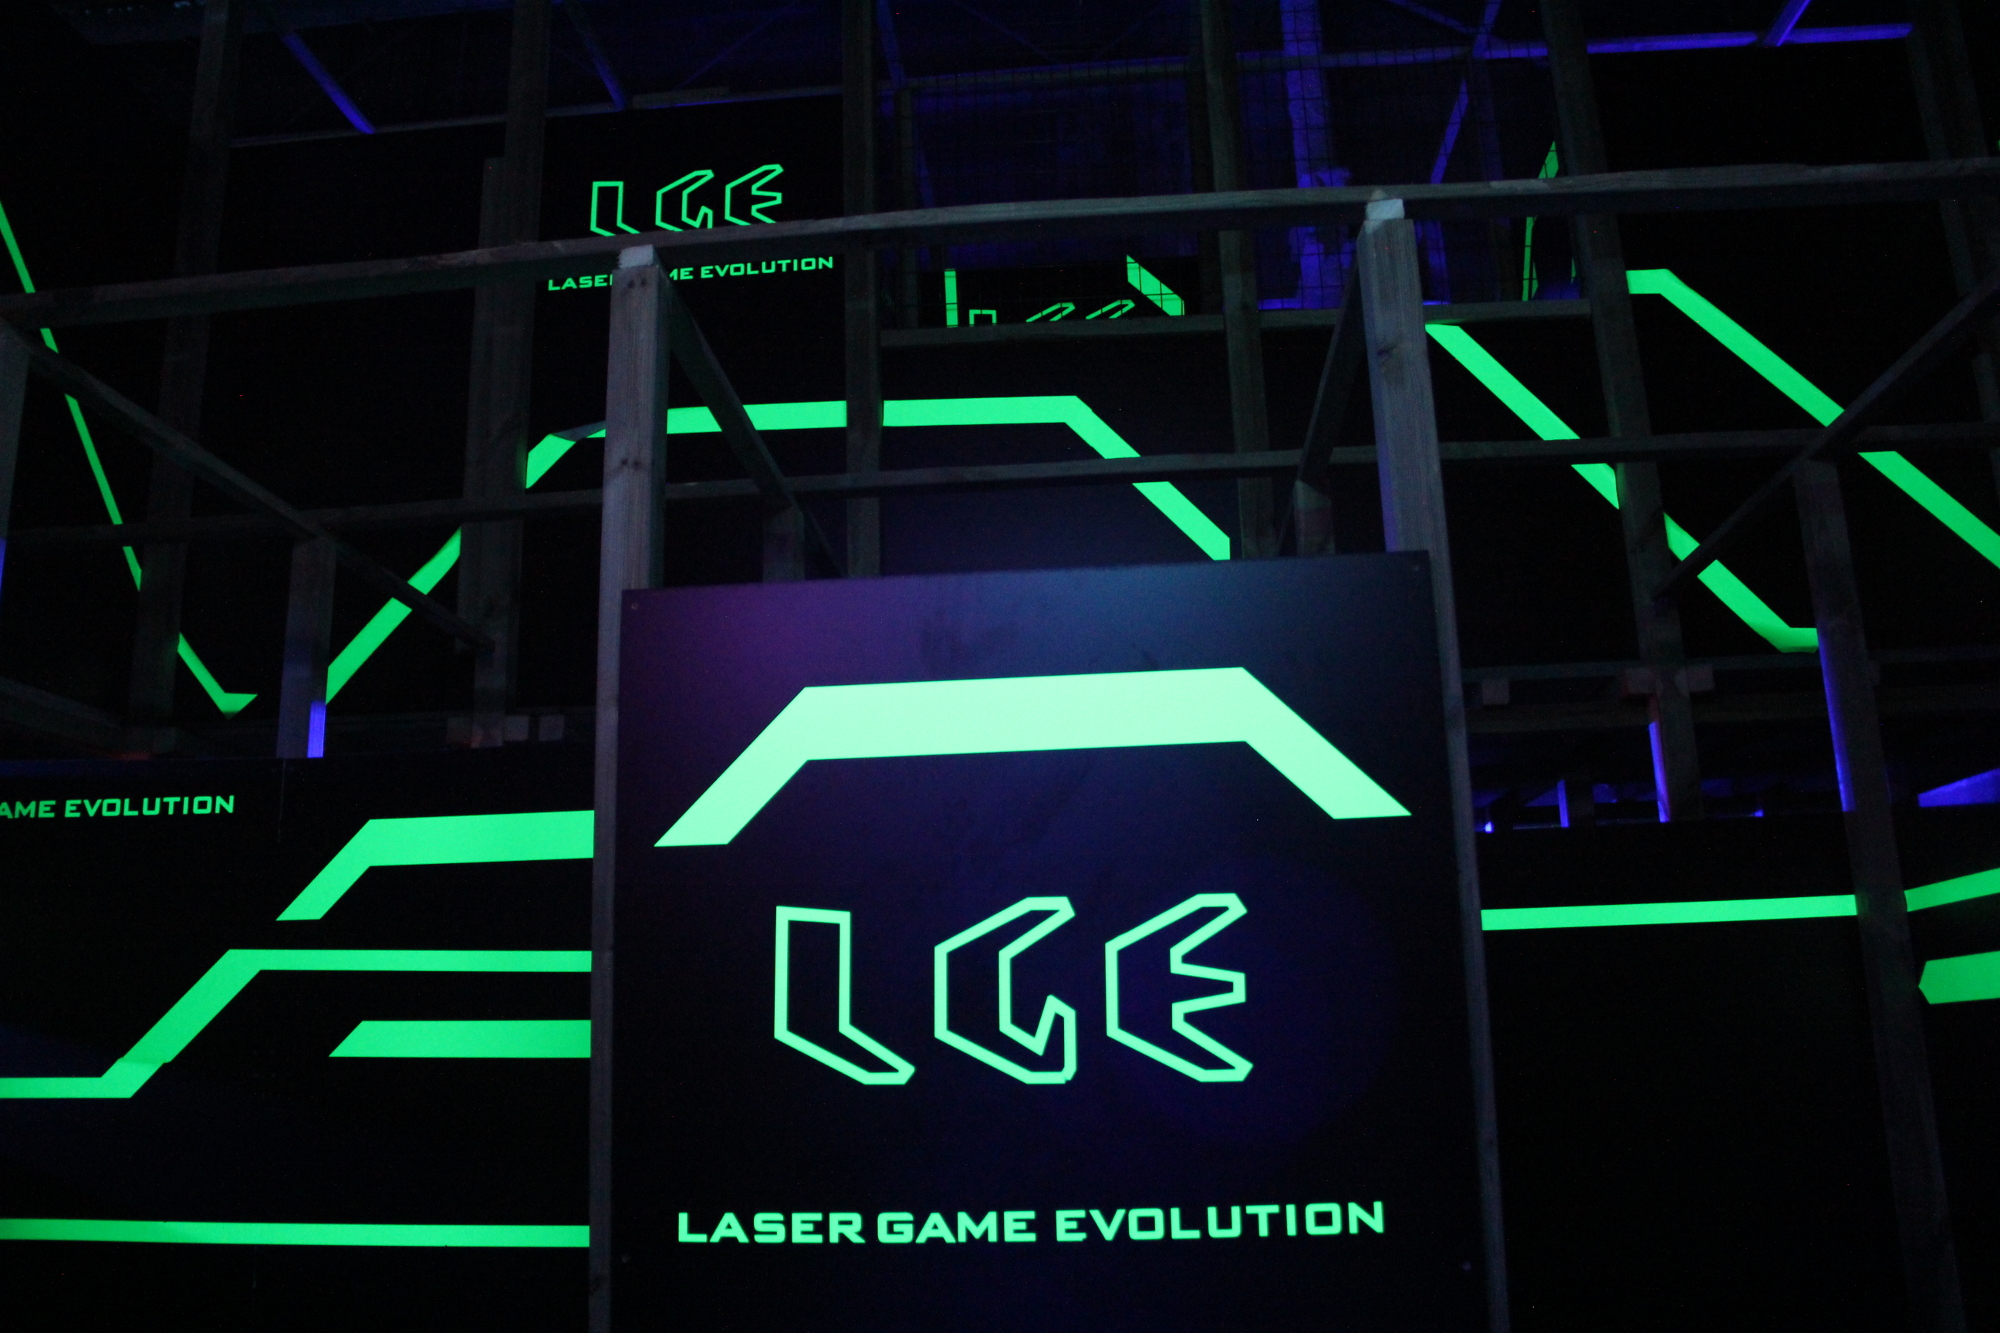  lasergame-espaitec Laser-Game-Evolution-Castellon-Espaitec-2